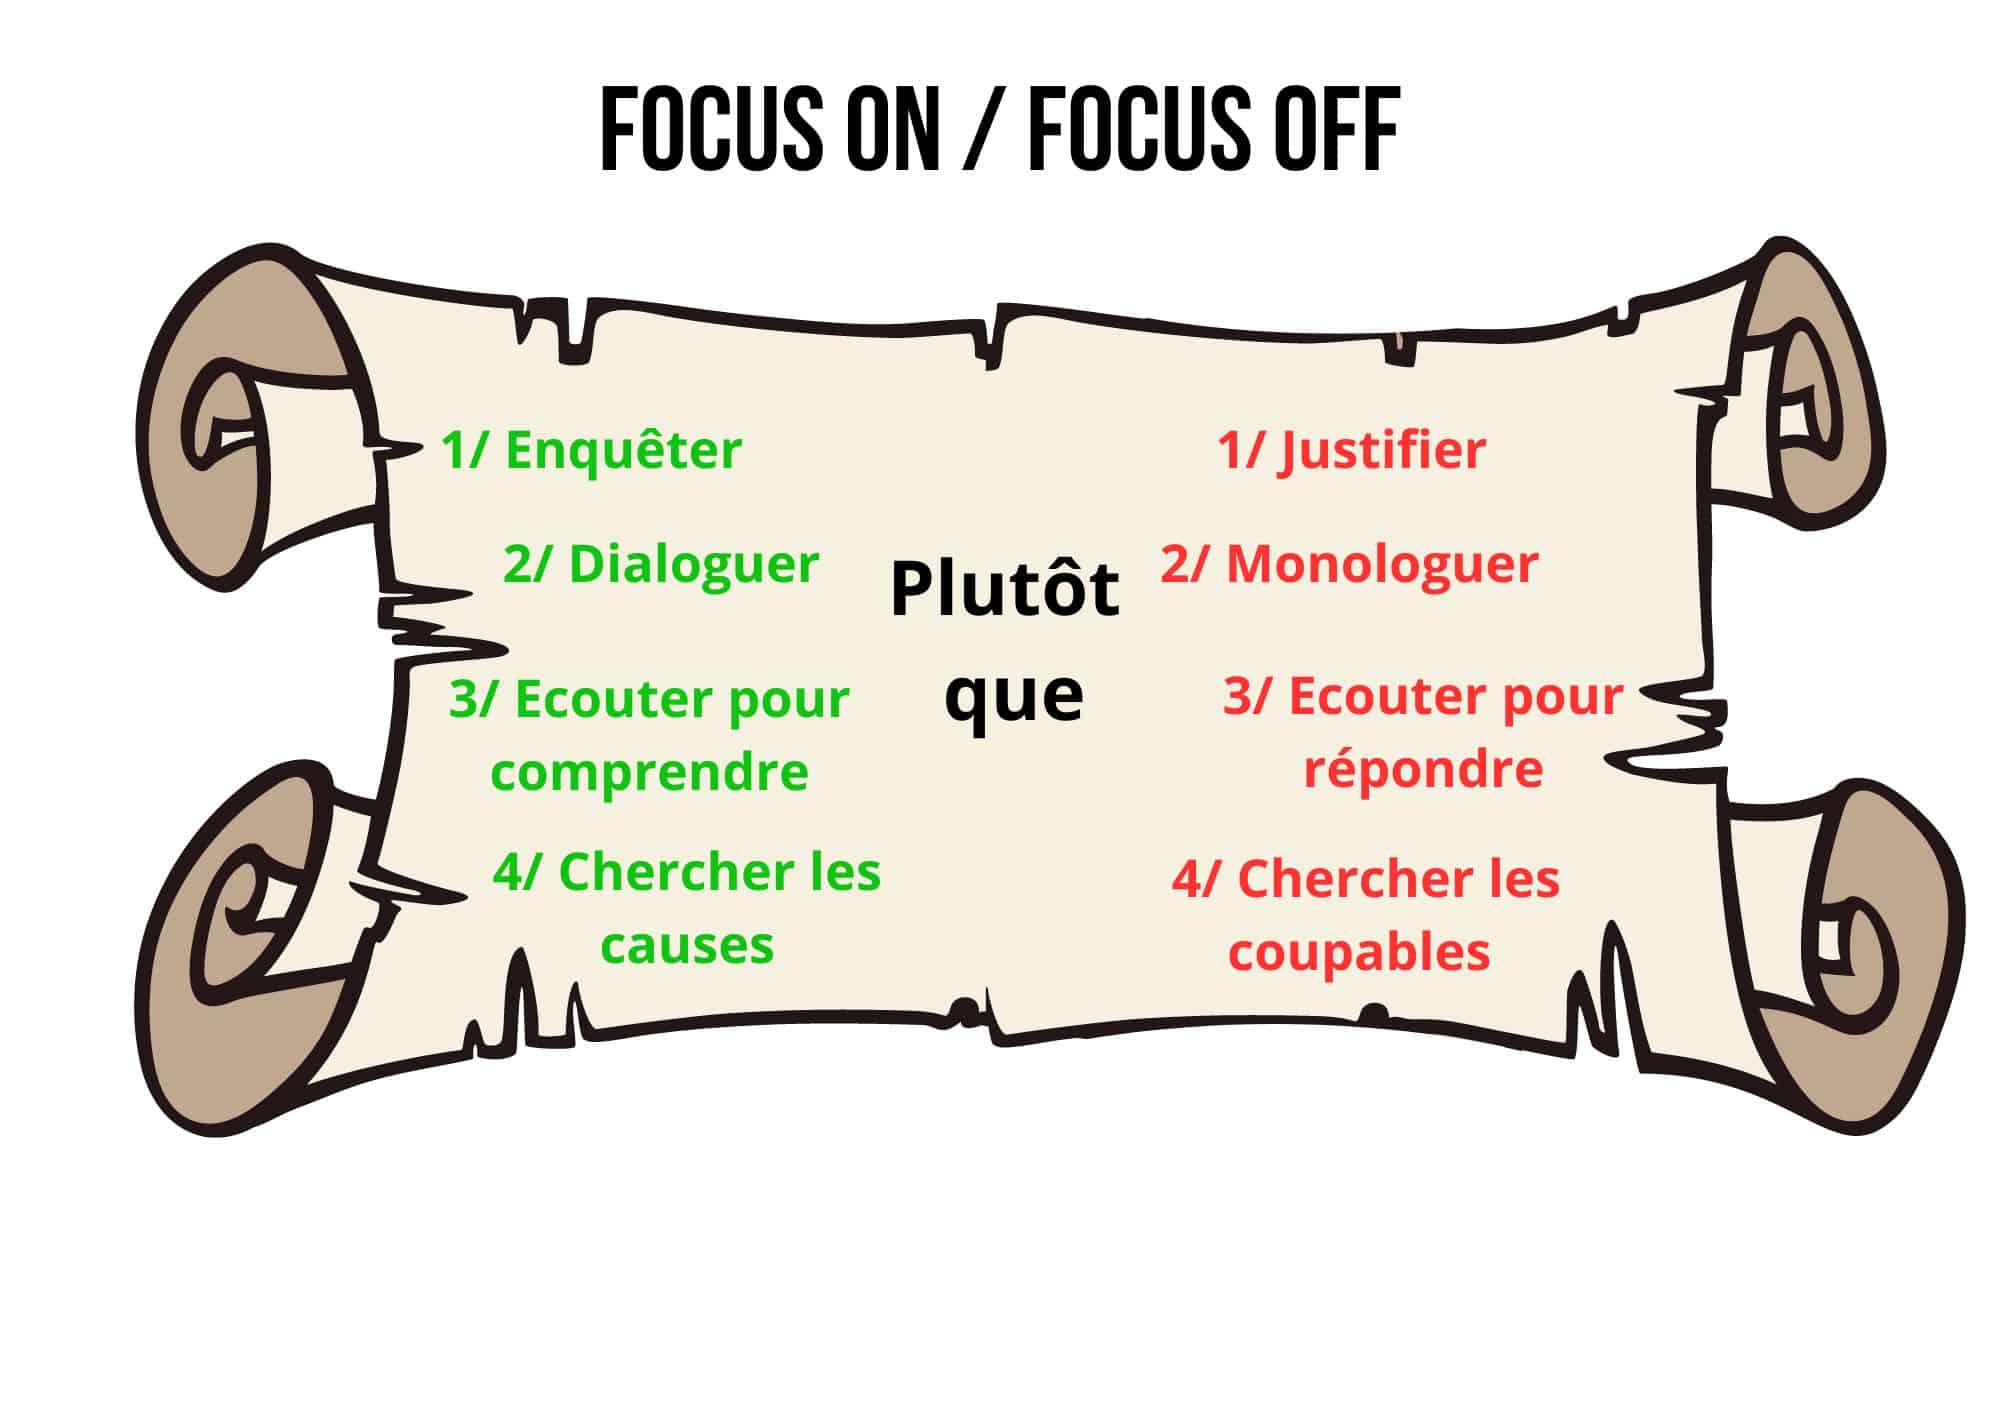 Focus on - Focus off